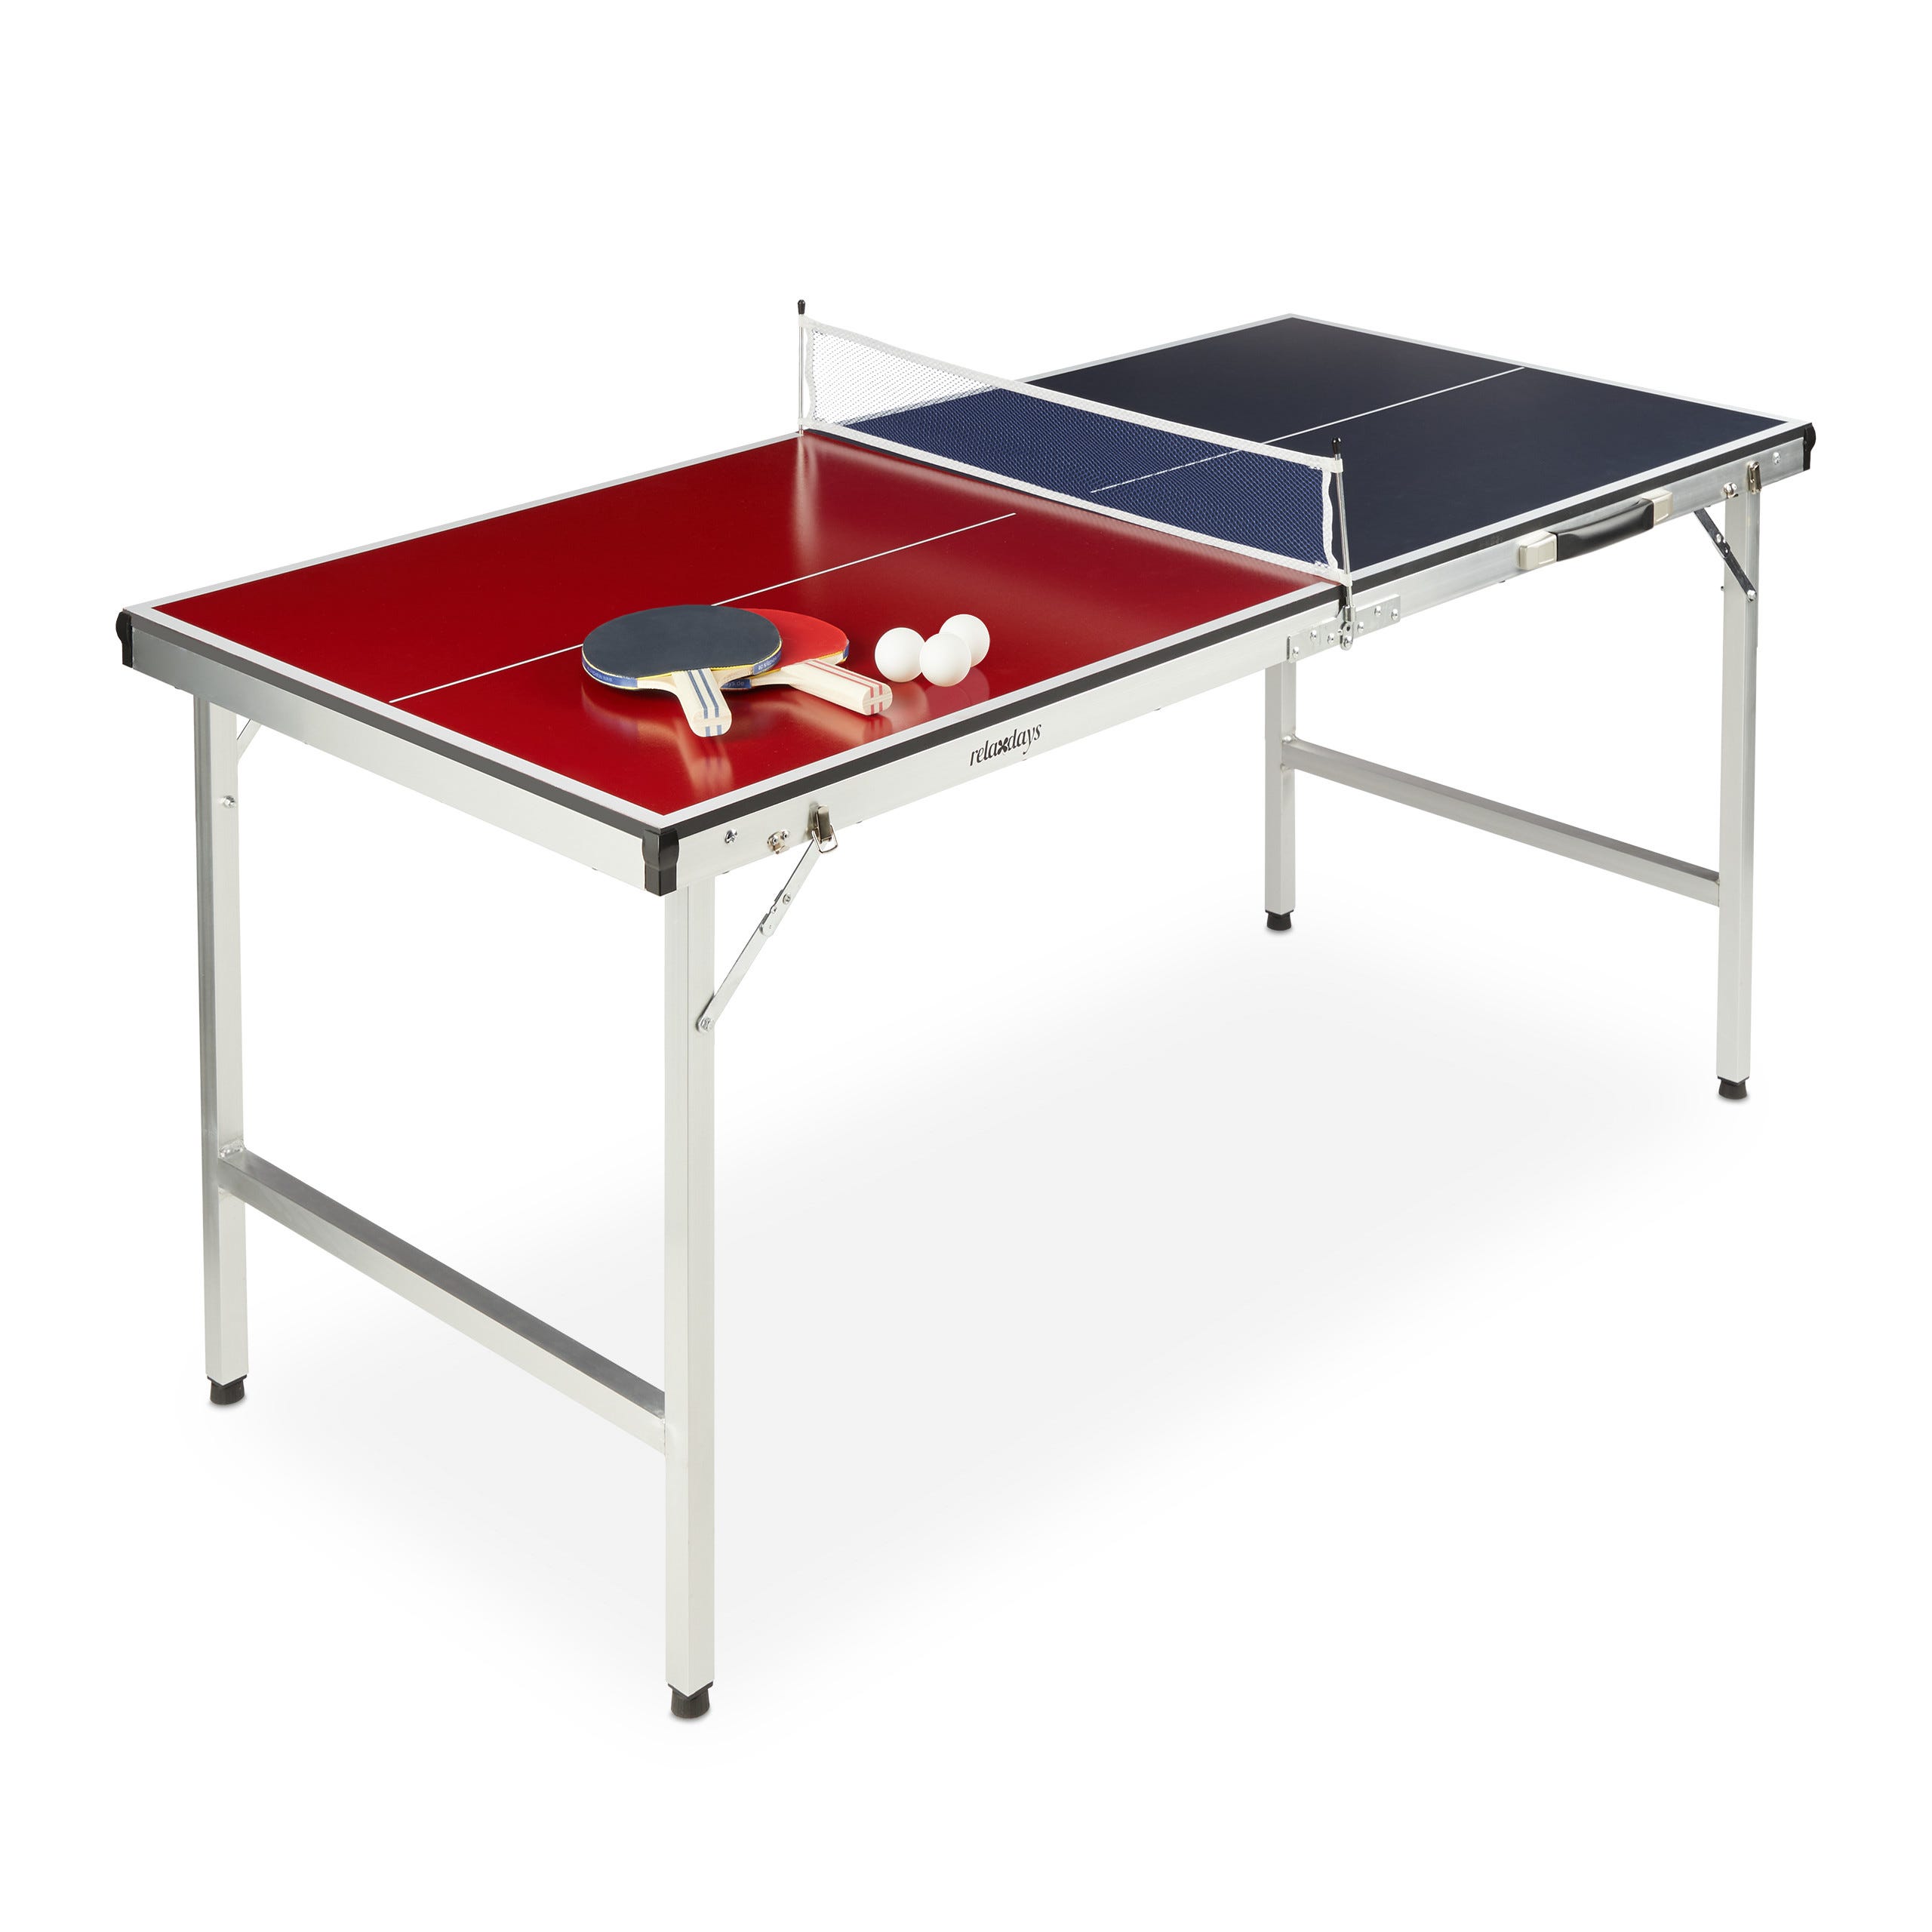 RELAX4LIFE Table de Ping-Pong Pliable avec 2 Raquettes, Table de Tennis  Portable avec 2 Balles et Filet pour Intérieur/Extérieur, Armature en Alu  et 6 Pieds Antidérapants, 152X76X76CM,Bleu